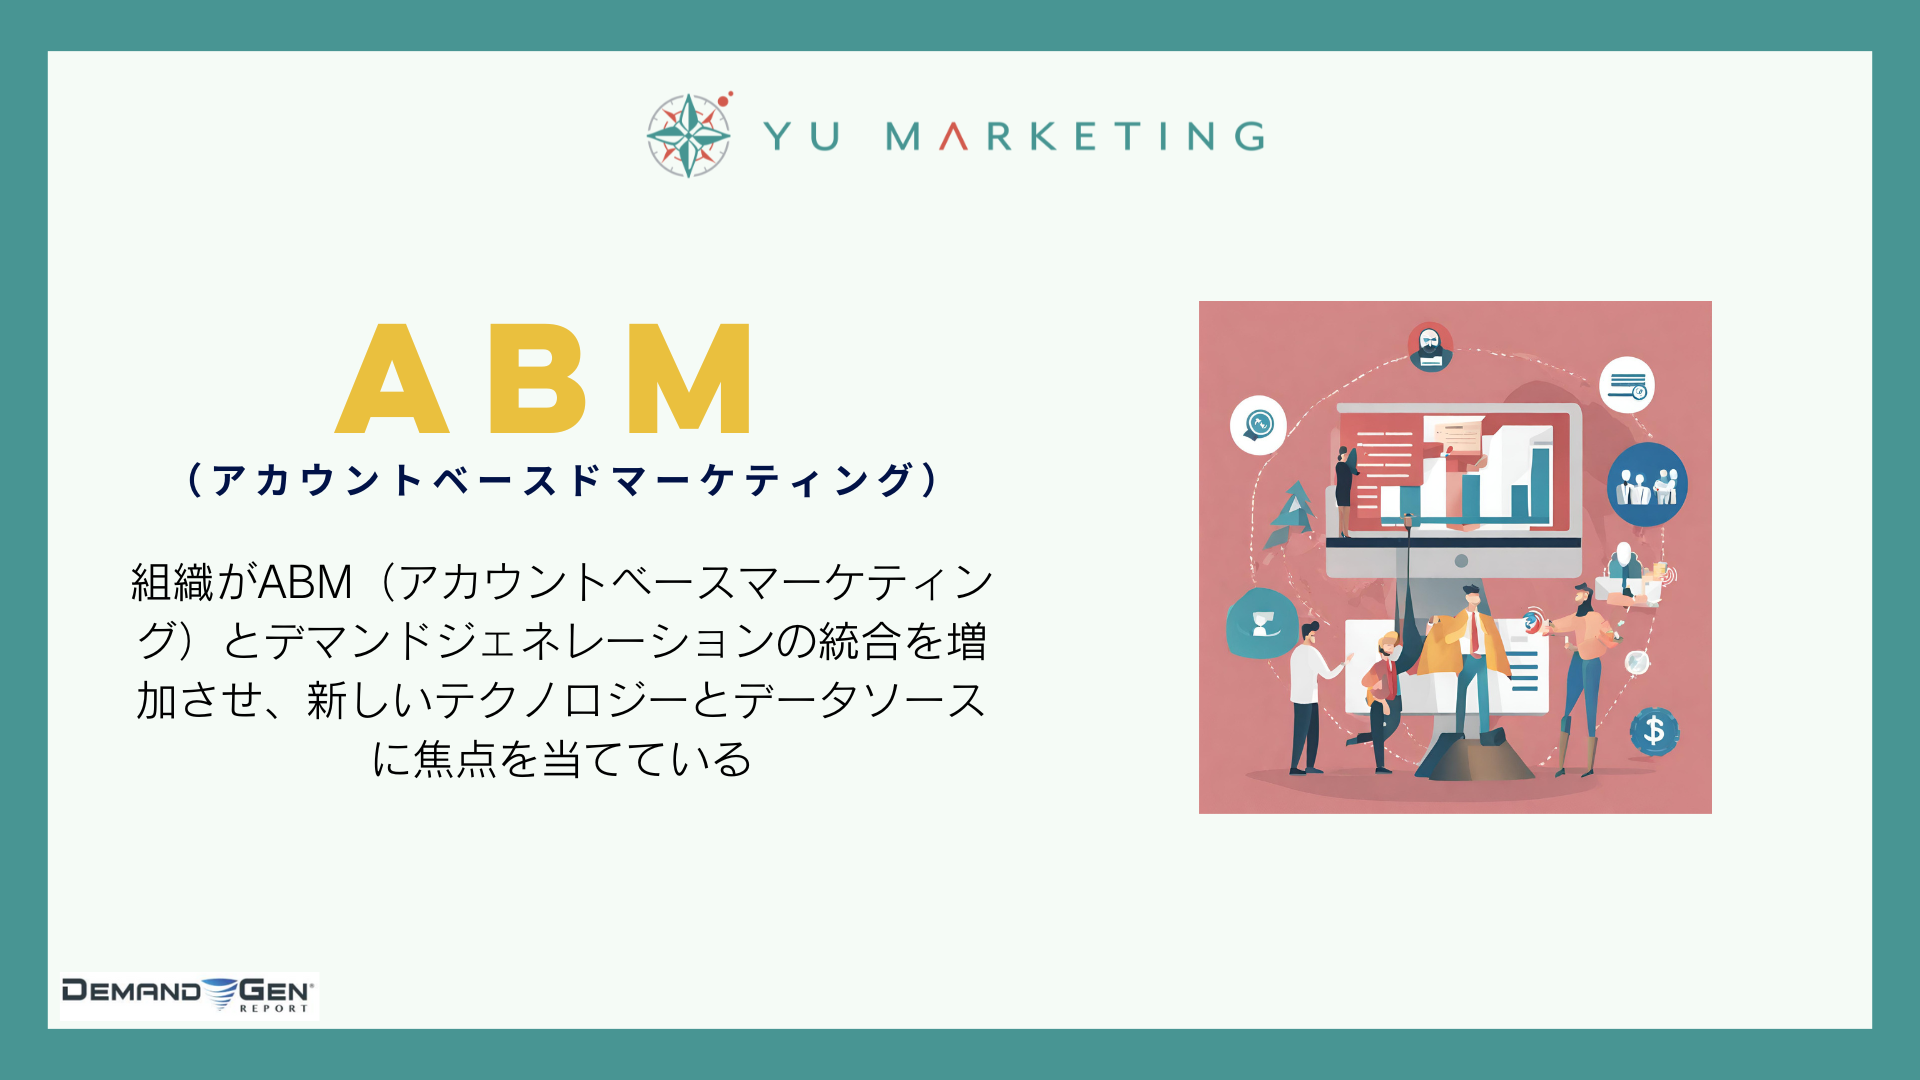 組織がABM（アカウントベースマーケティング）とデマンドジェネレーションの統合を増加させ、新しいテクノロジーとデータソースに焦点を当てている